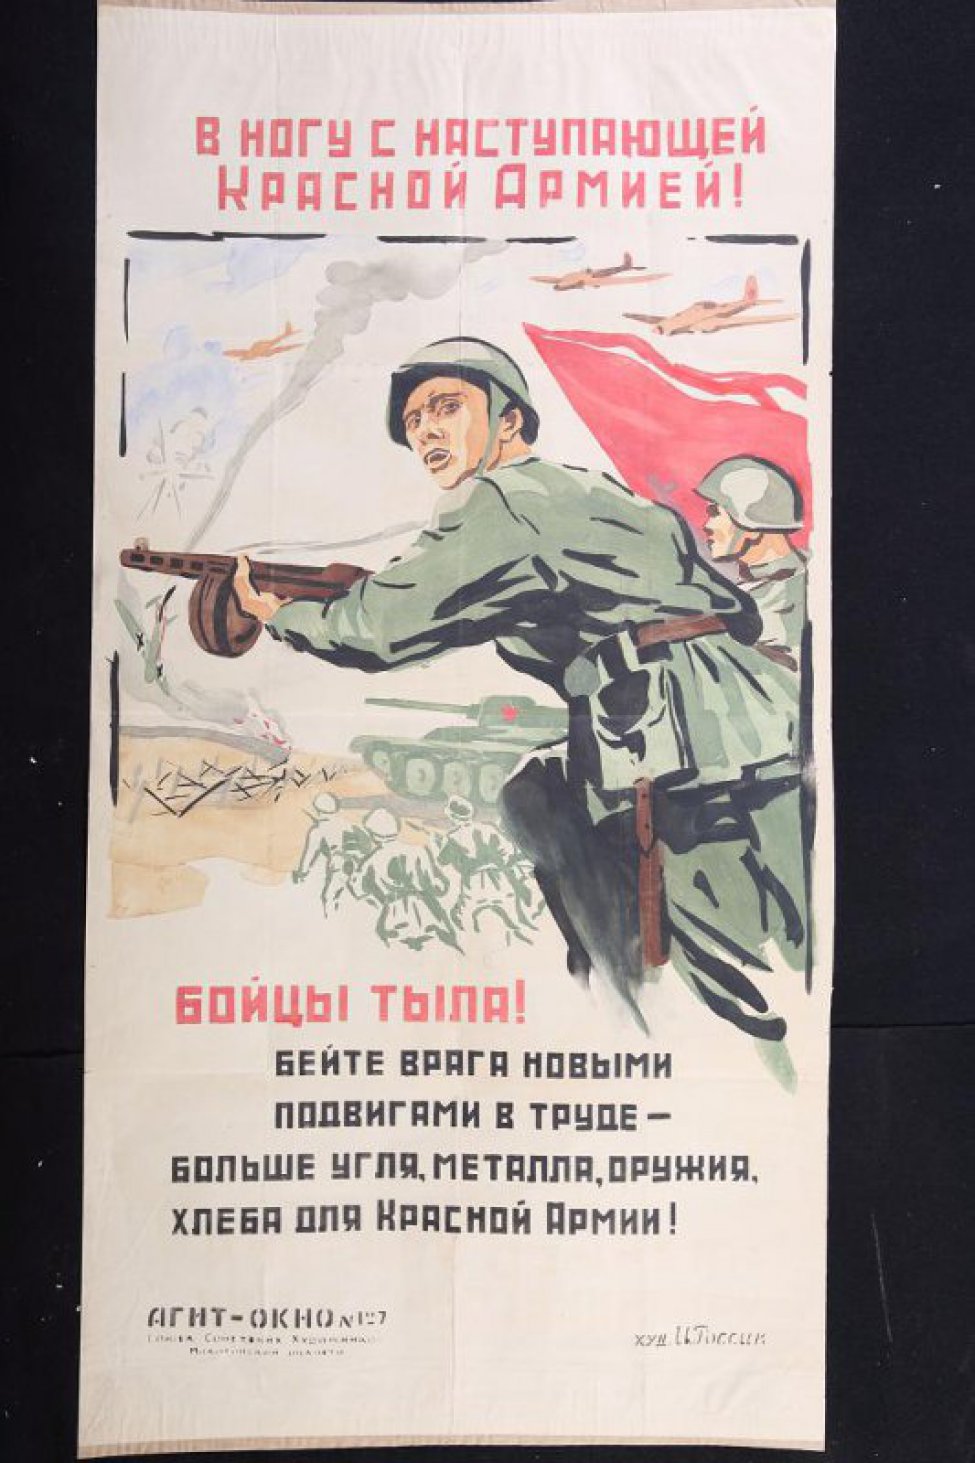 Изображено: советский боец с автоматом в руке идет в наступление, другой боец со знаменем.